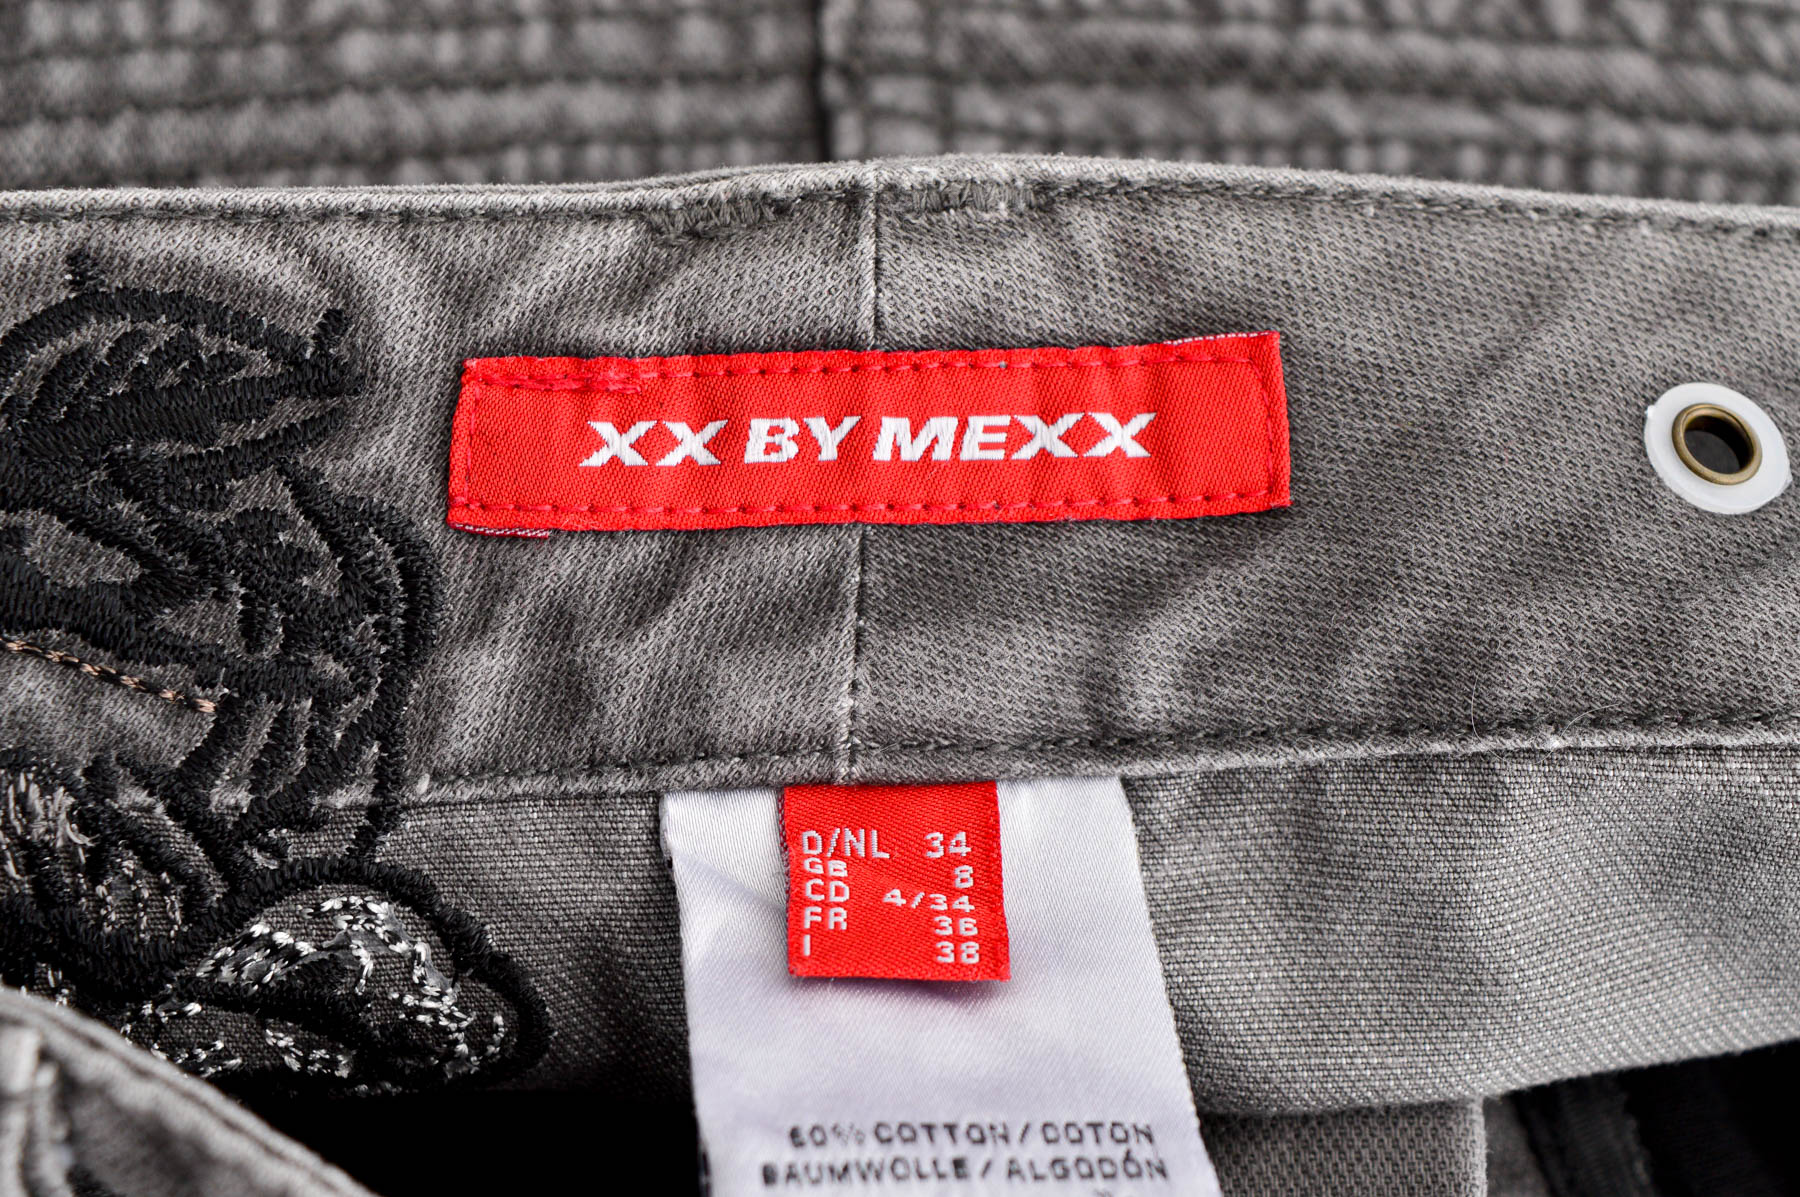 Spódnica jeansowa - XX by MEXX - 2